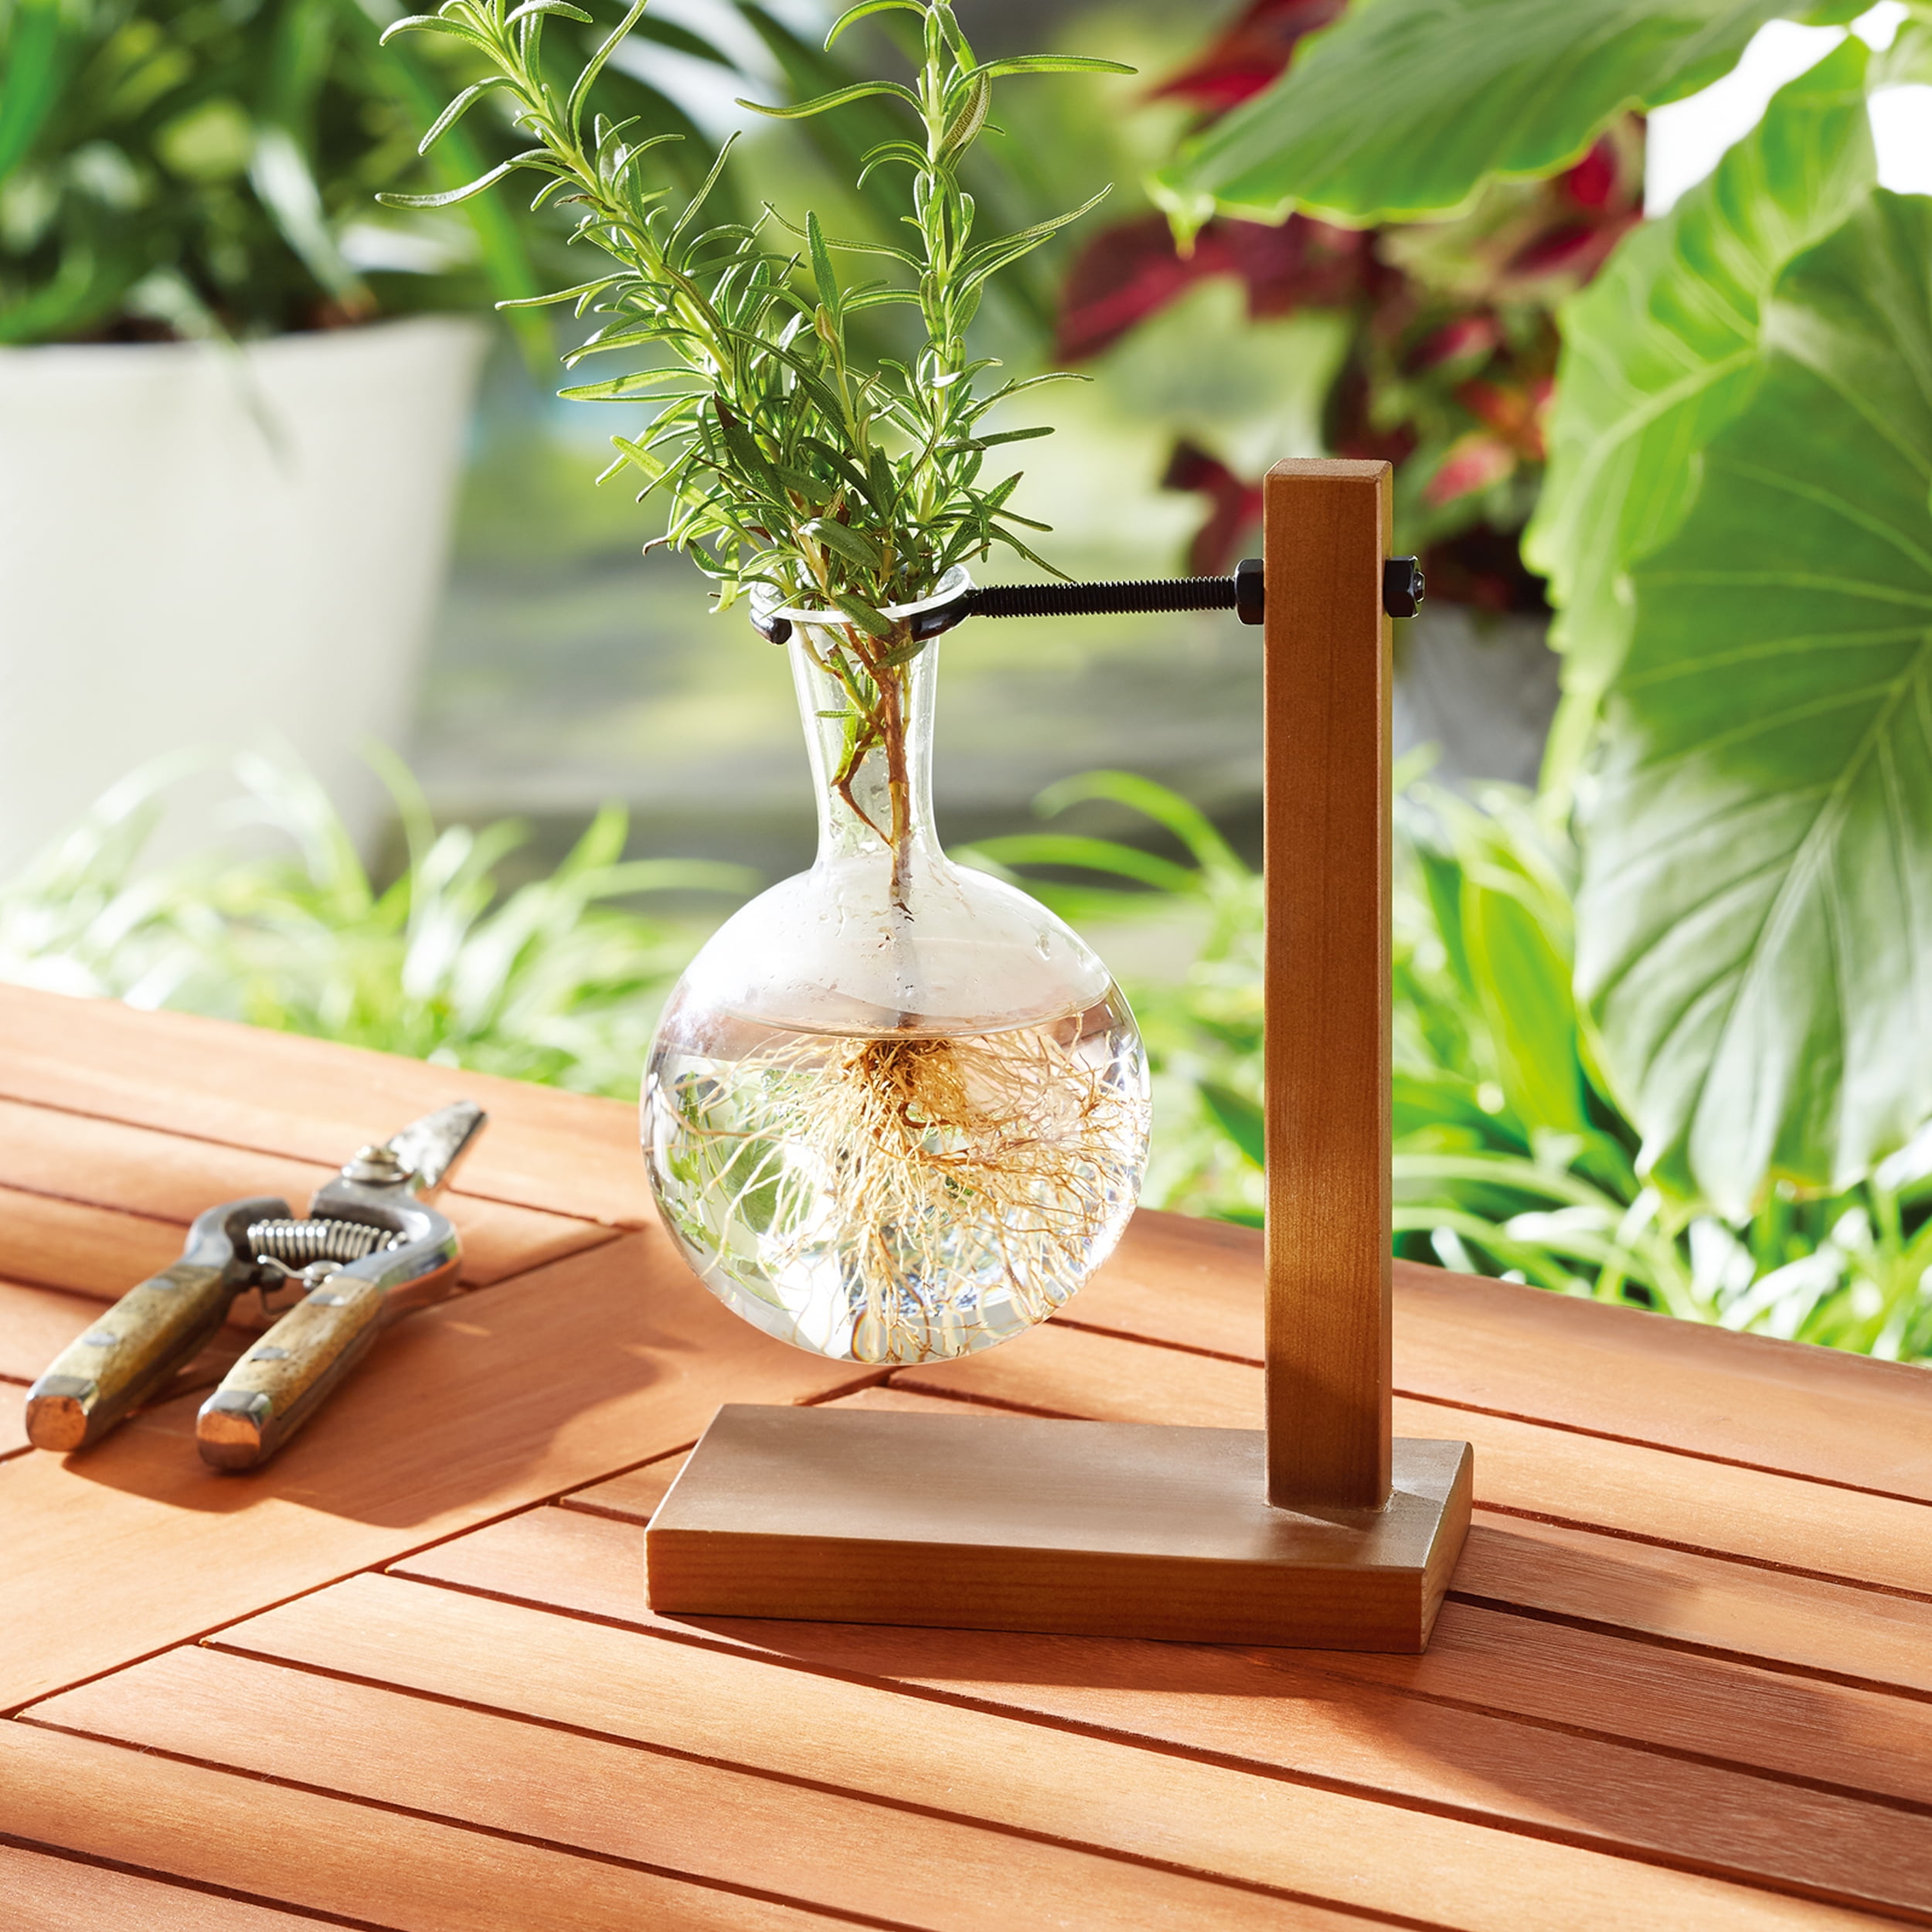 Retro Vase Flower Planter Wooden Base Modern Tabletop Garden Table Decor Gift 